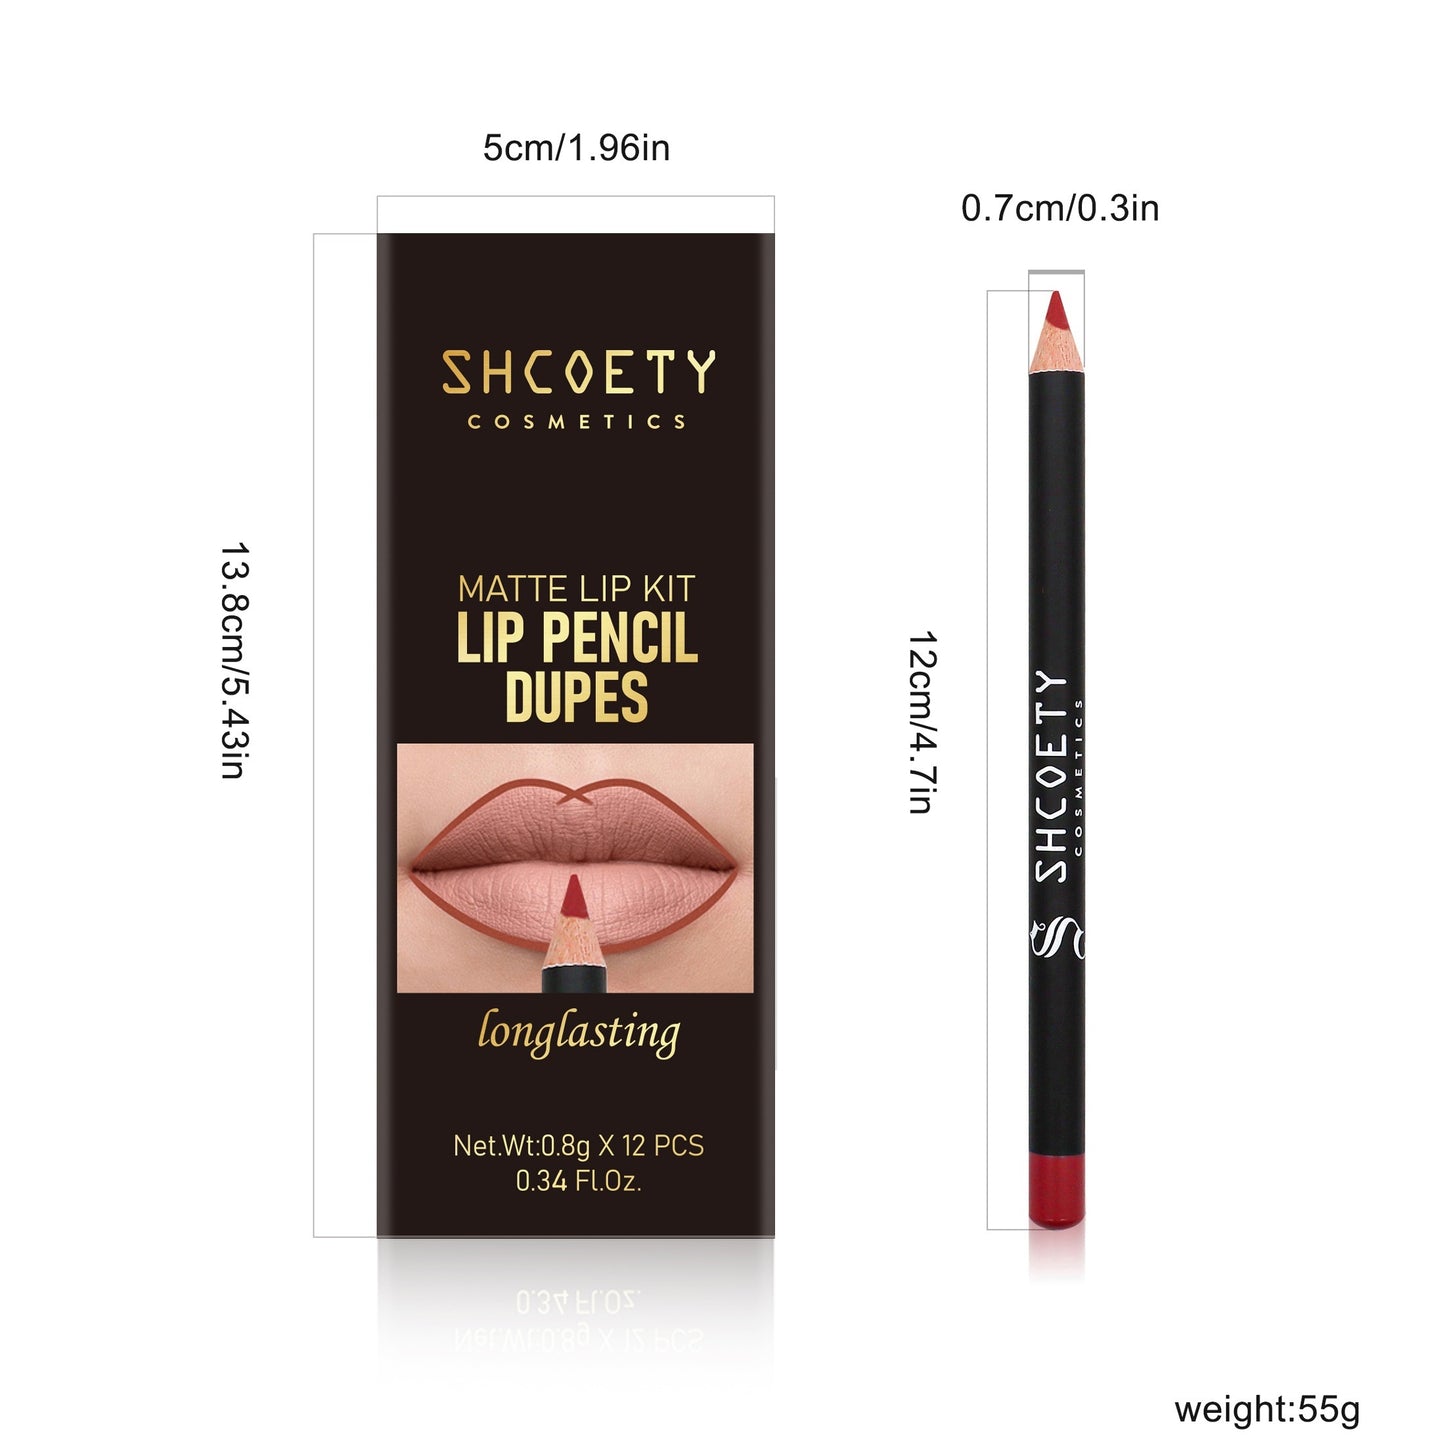 12 Color Matte Lipstick Pen Lip Liner Set